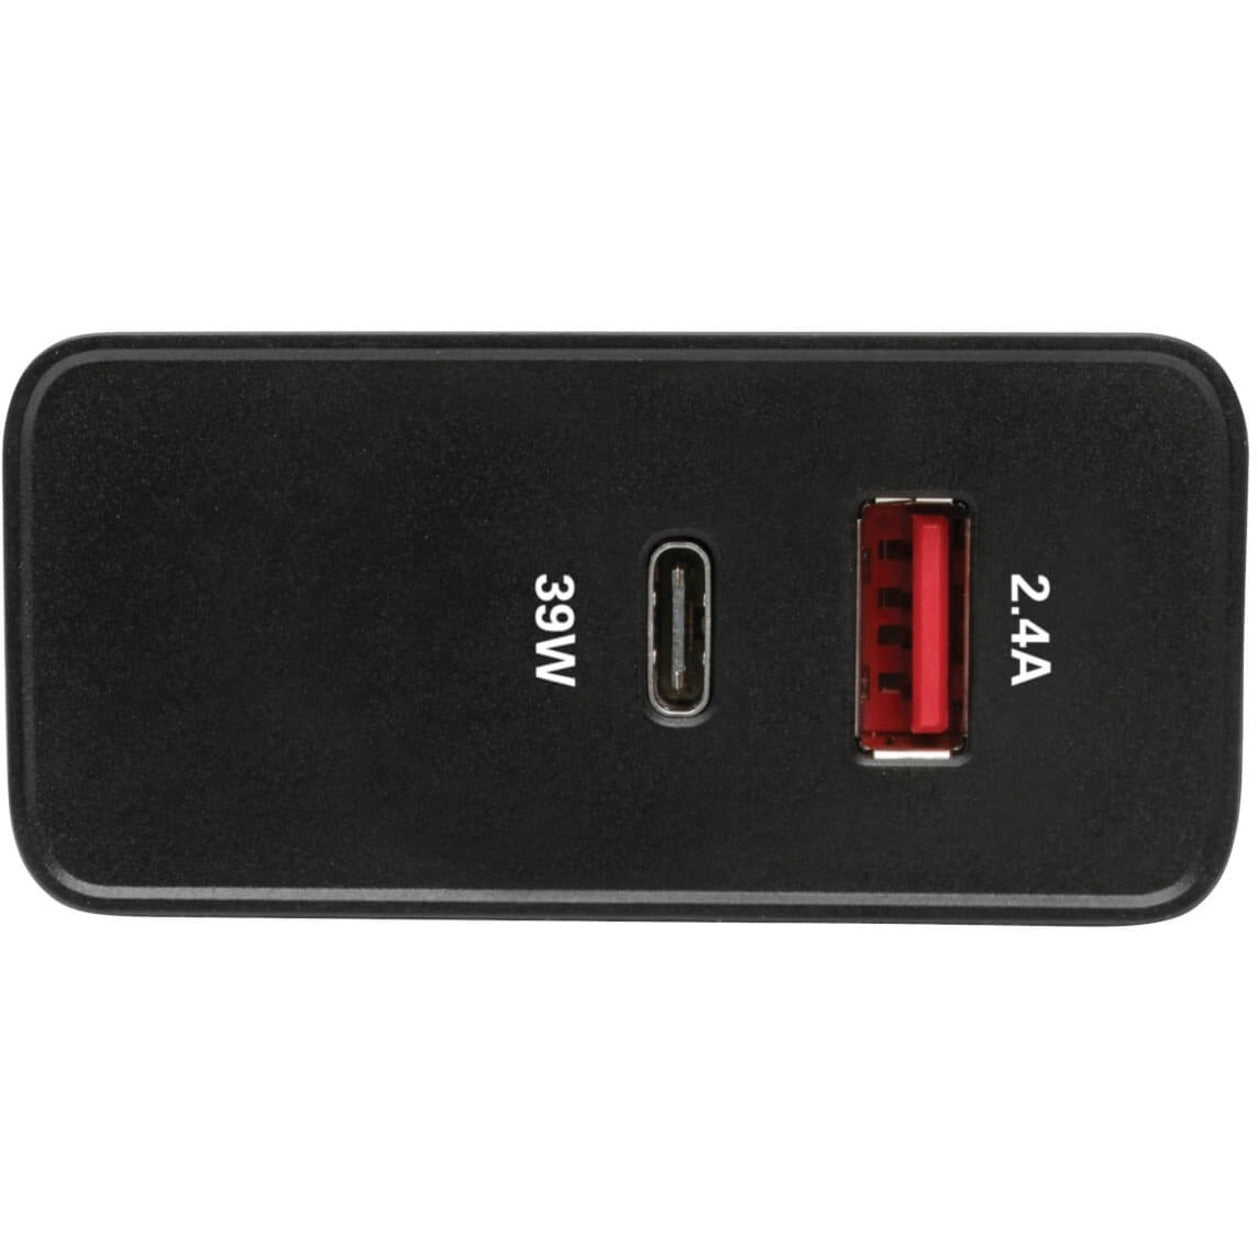 트리프 라이트 U280-W02-A1C1 AC 어댑터 2PT USB 월 충전기 with USB 타입 C 51W 전력 2년 보증